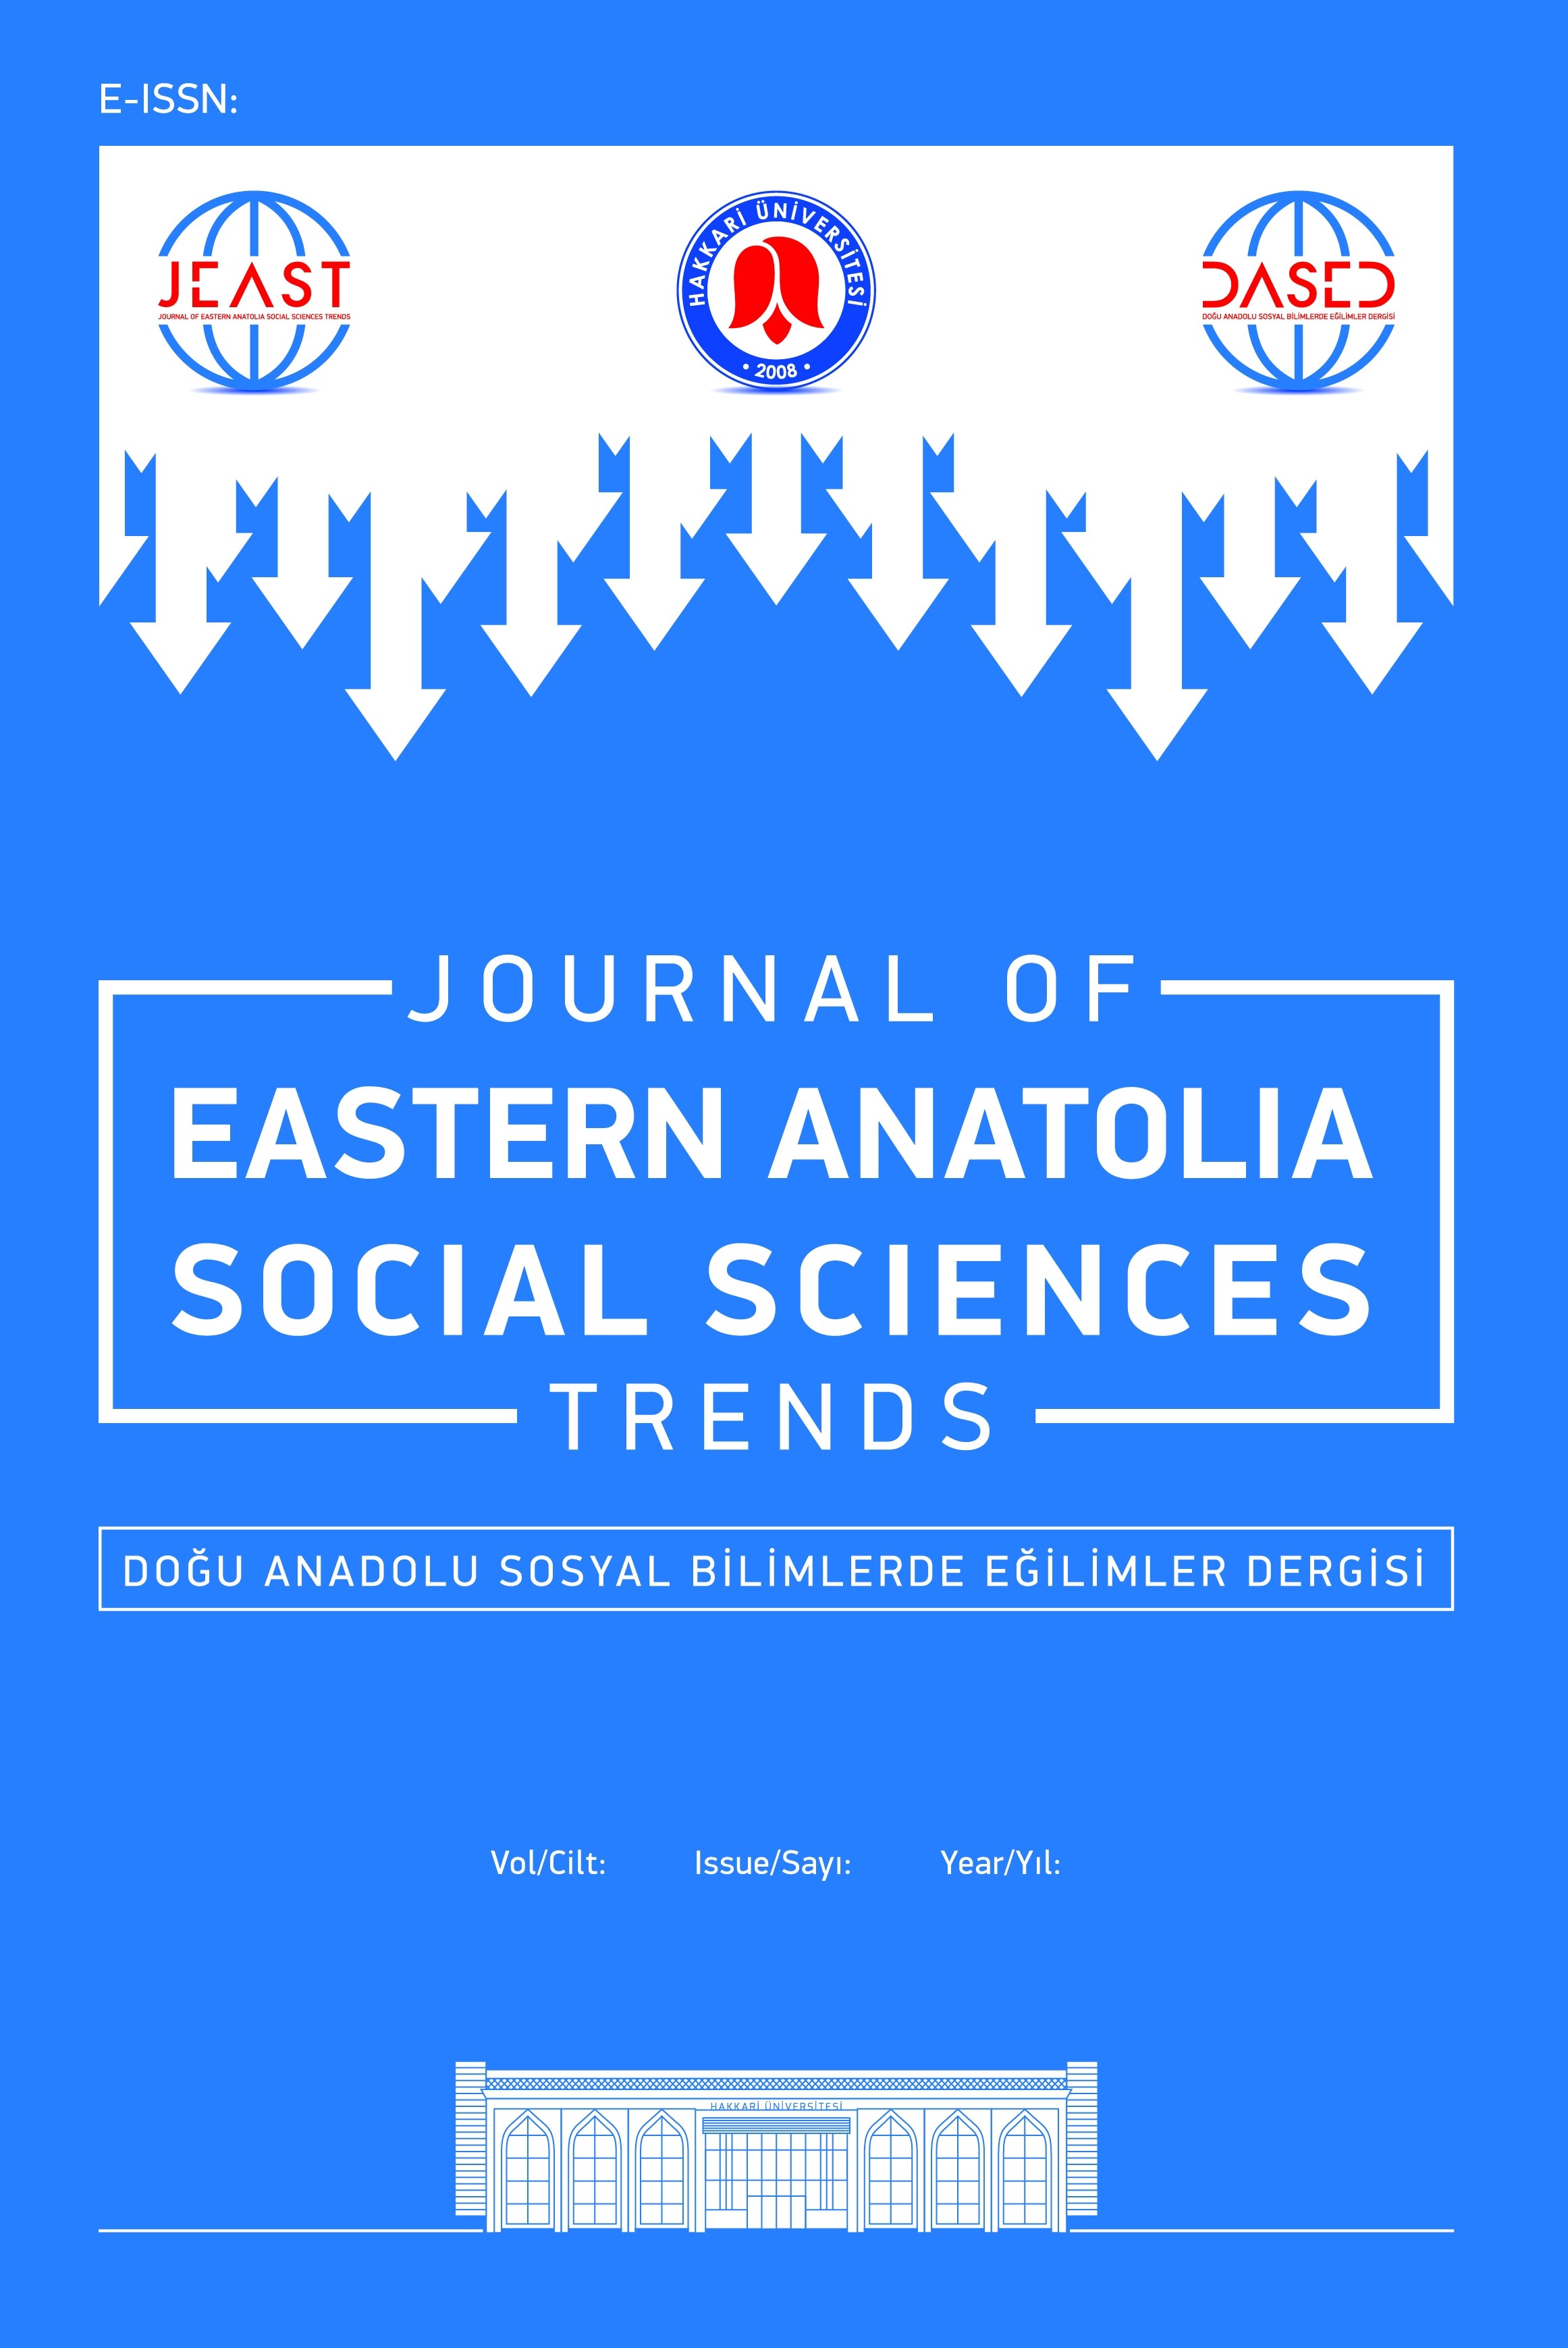 Doğu Anadolu Sosyal Bilimlerde Eğilimler Dergisi